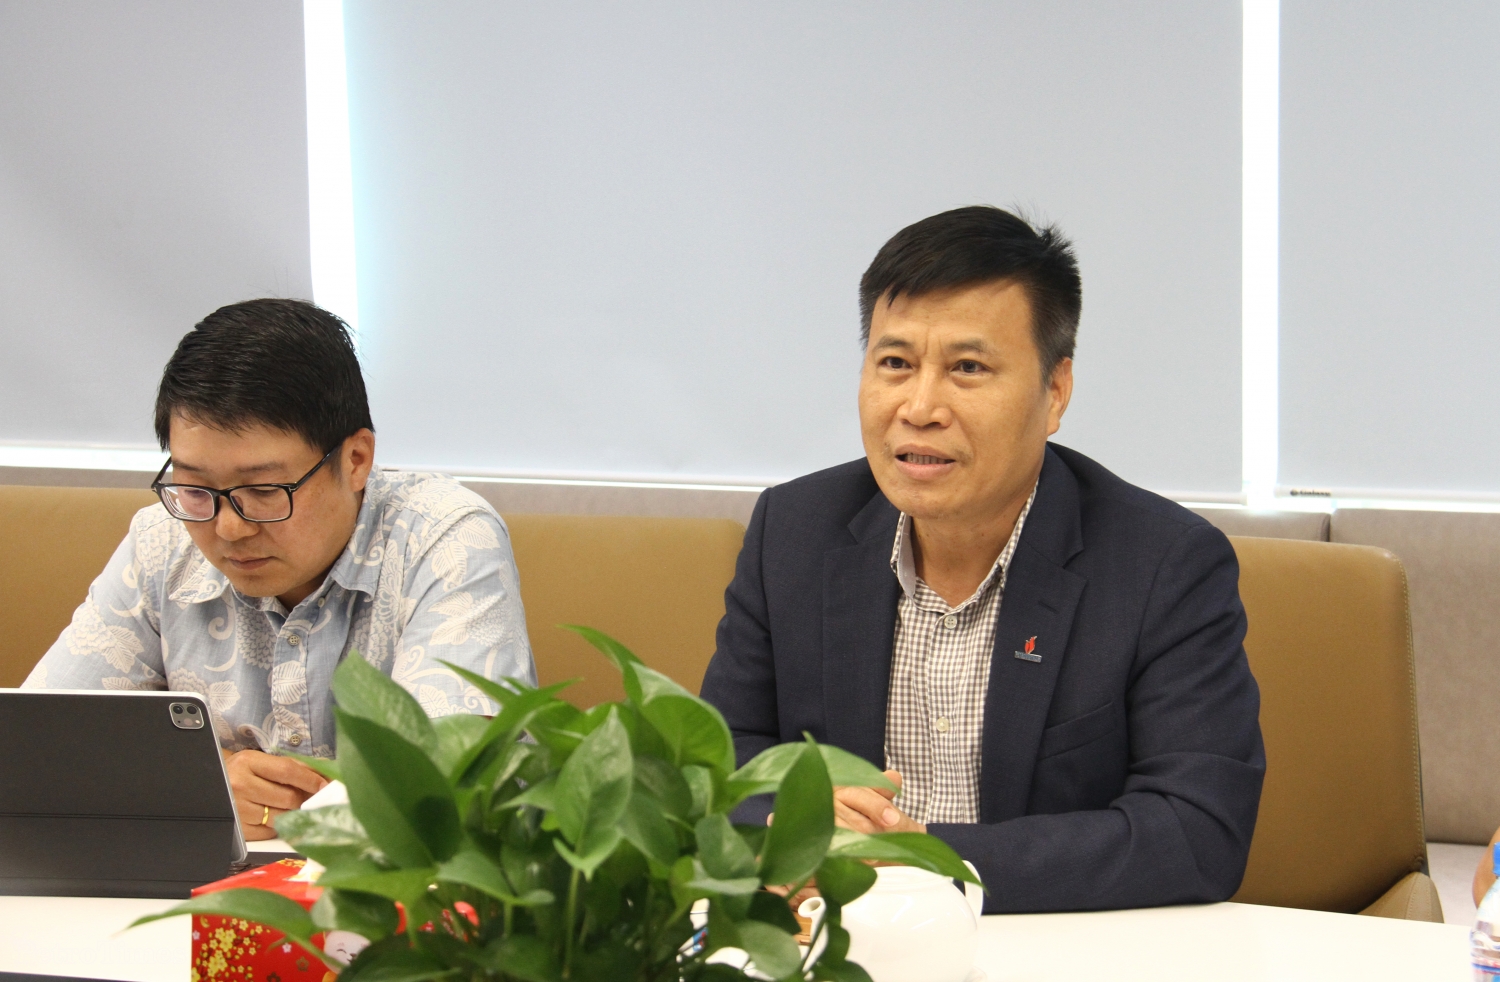 Hội Dầu khí Việt Nam và PVFCCo ký kết thoả thuận hợp tác